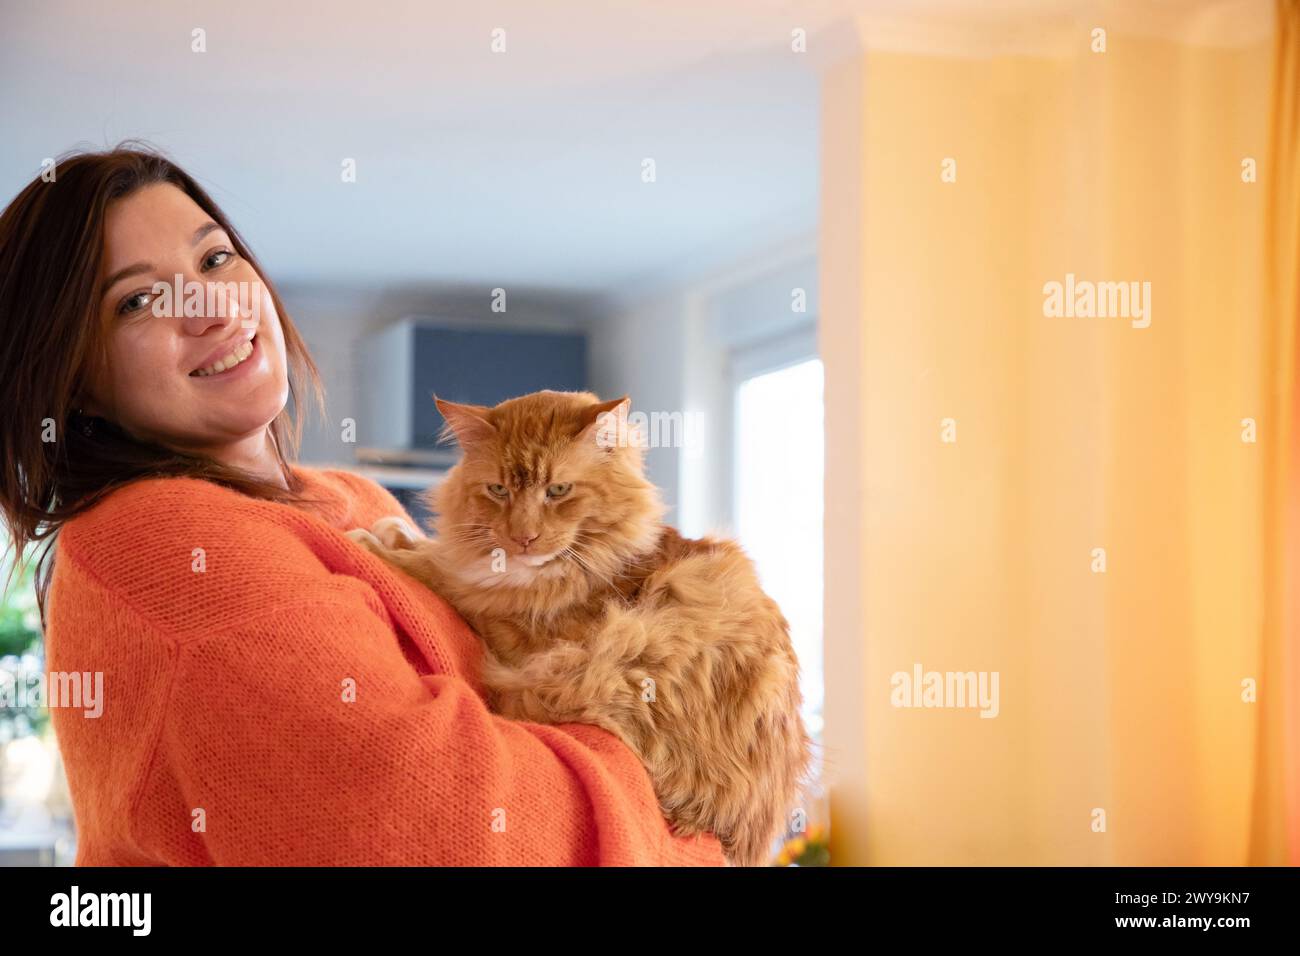 Eine junge Frau, die einen warmen Pullover trägt, ruht sich zu Hause bei der Katze aus Stockfoto